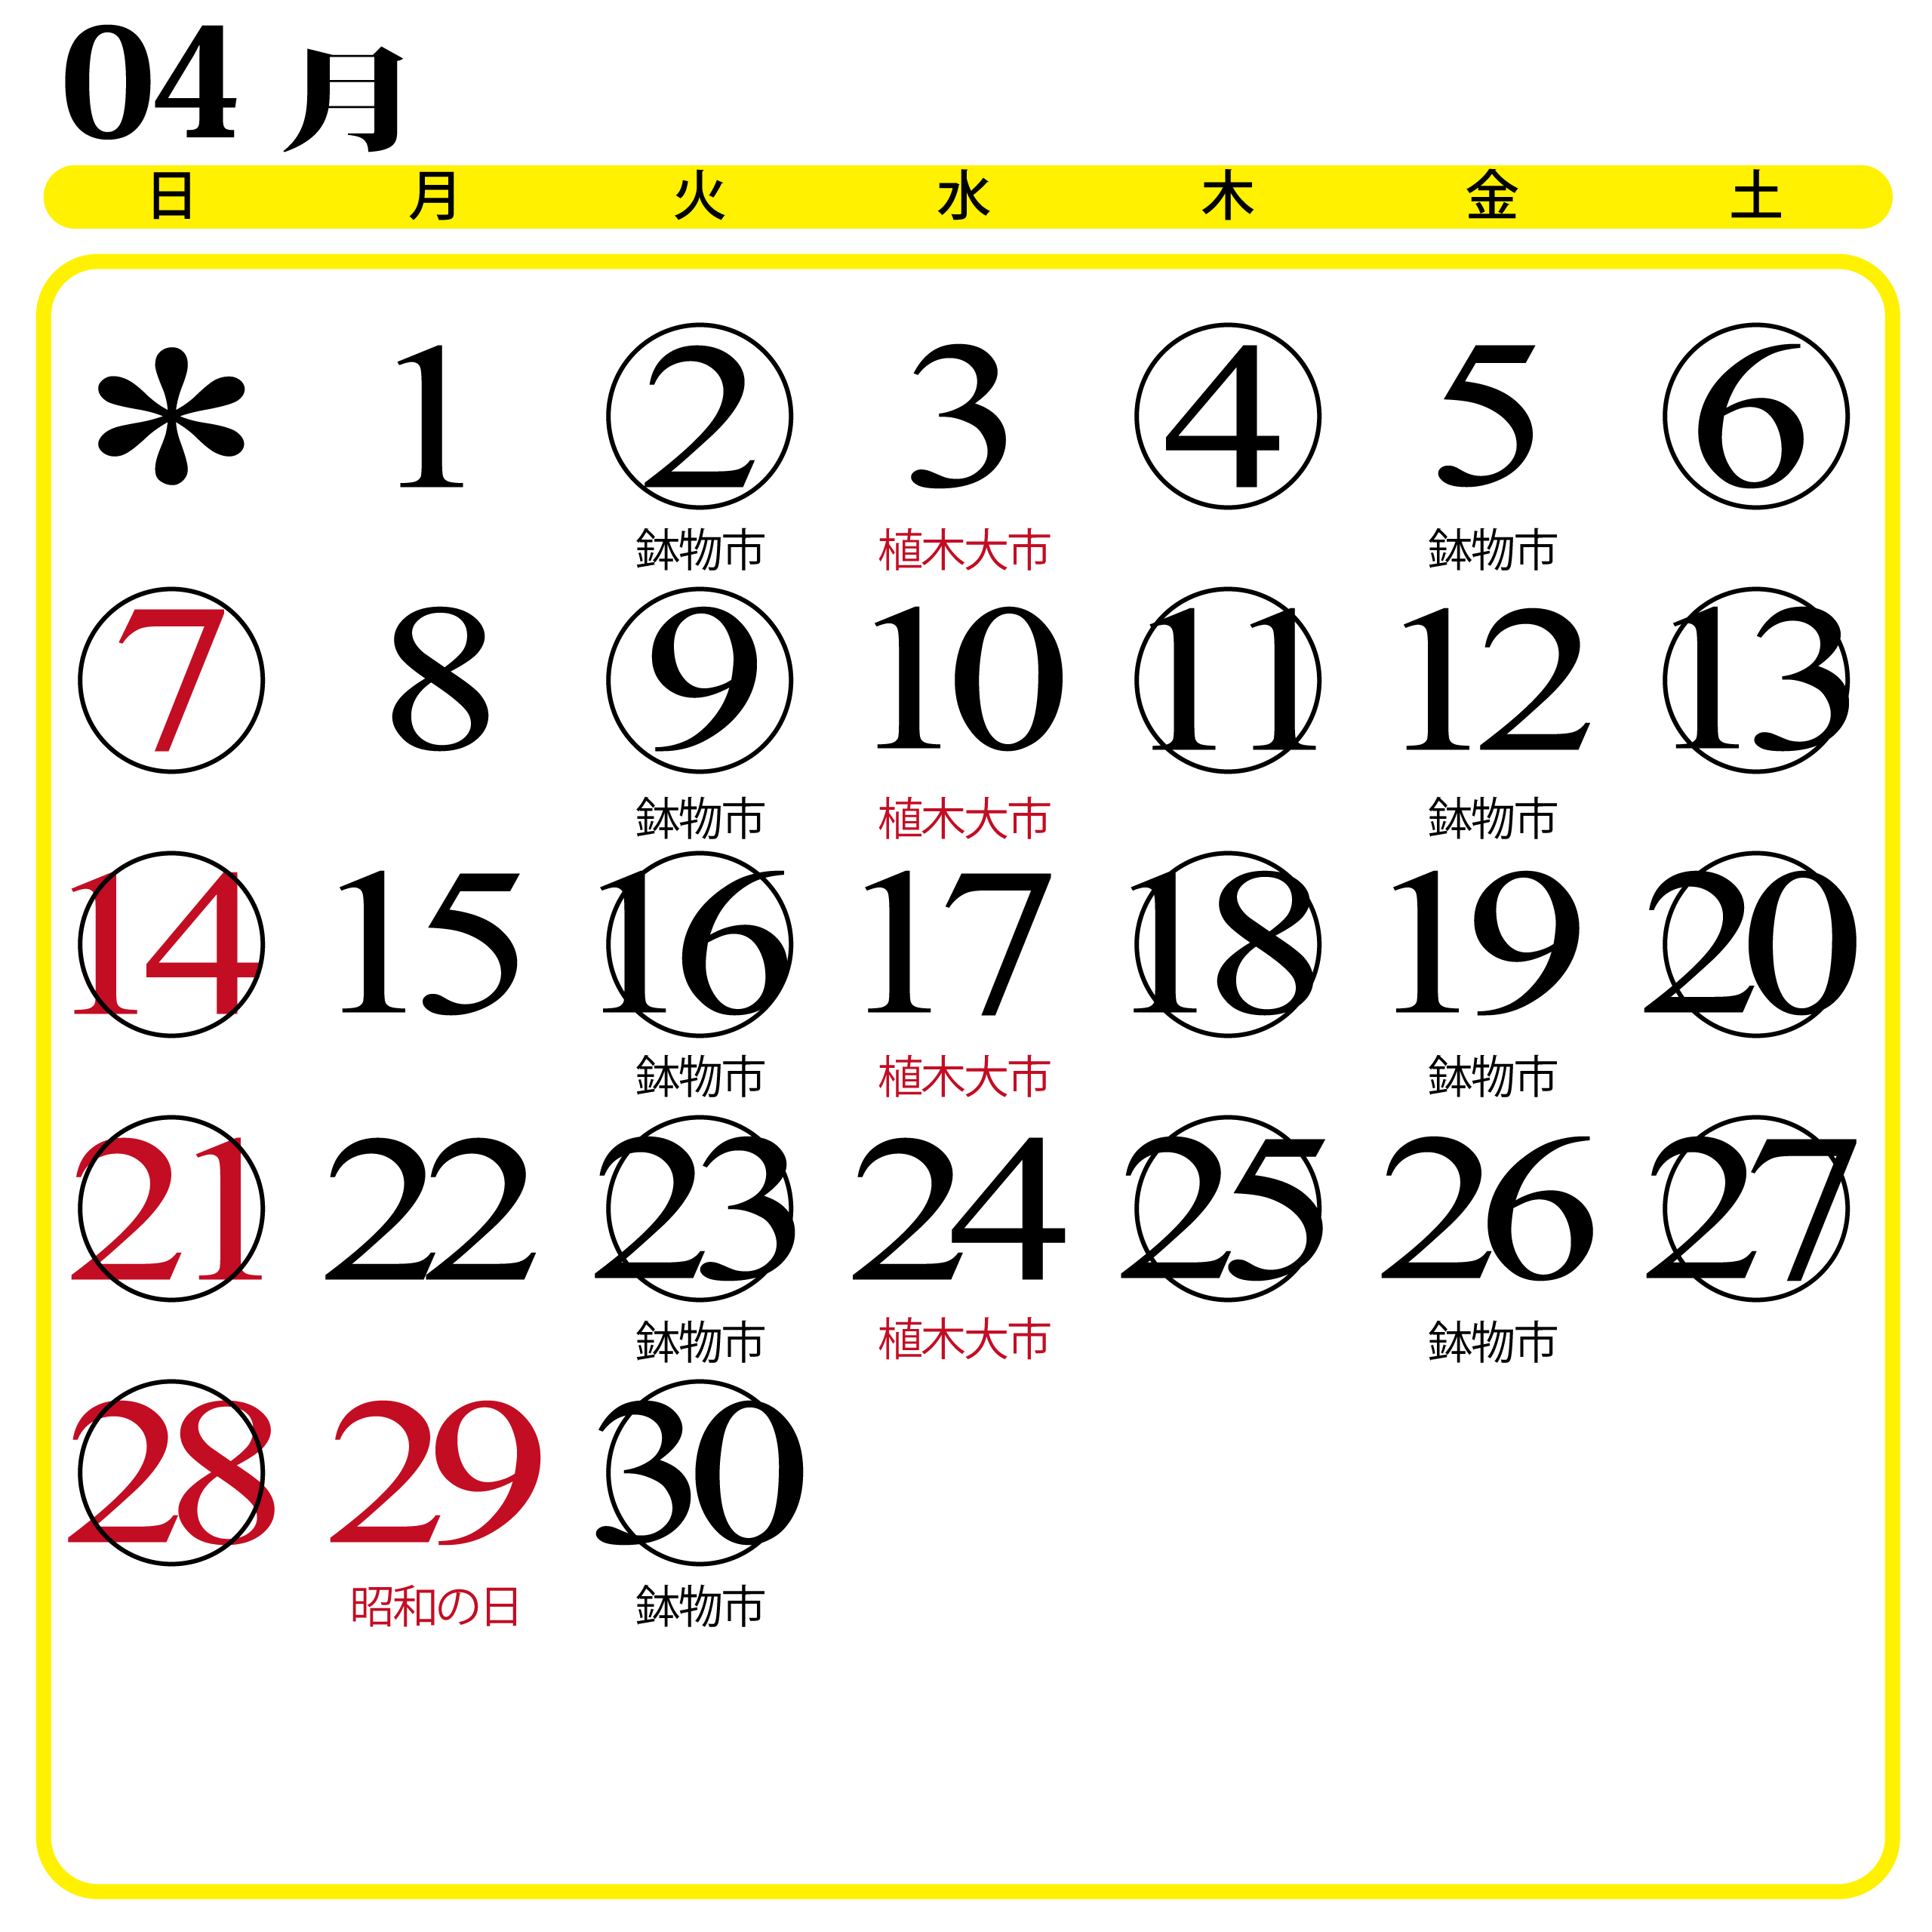 カレンダー画像202304